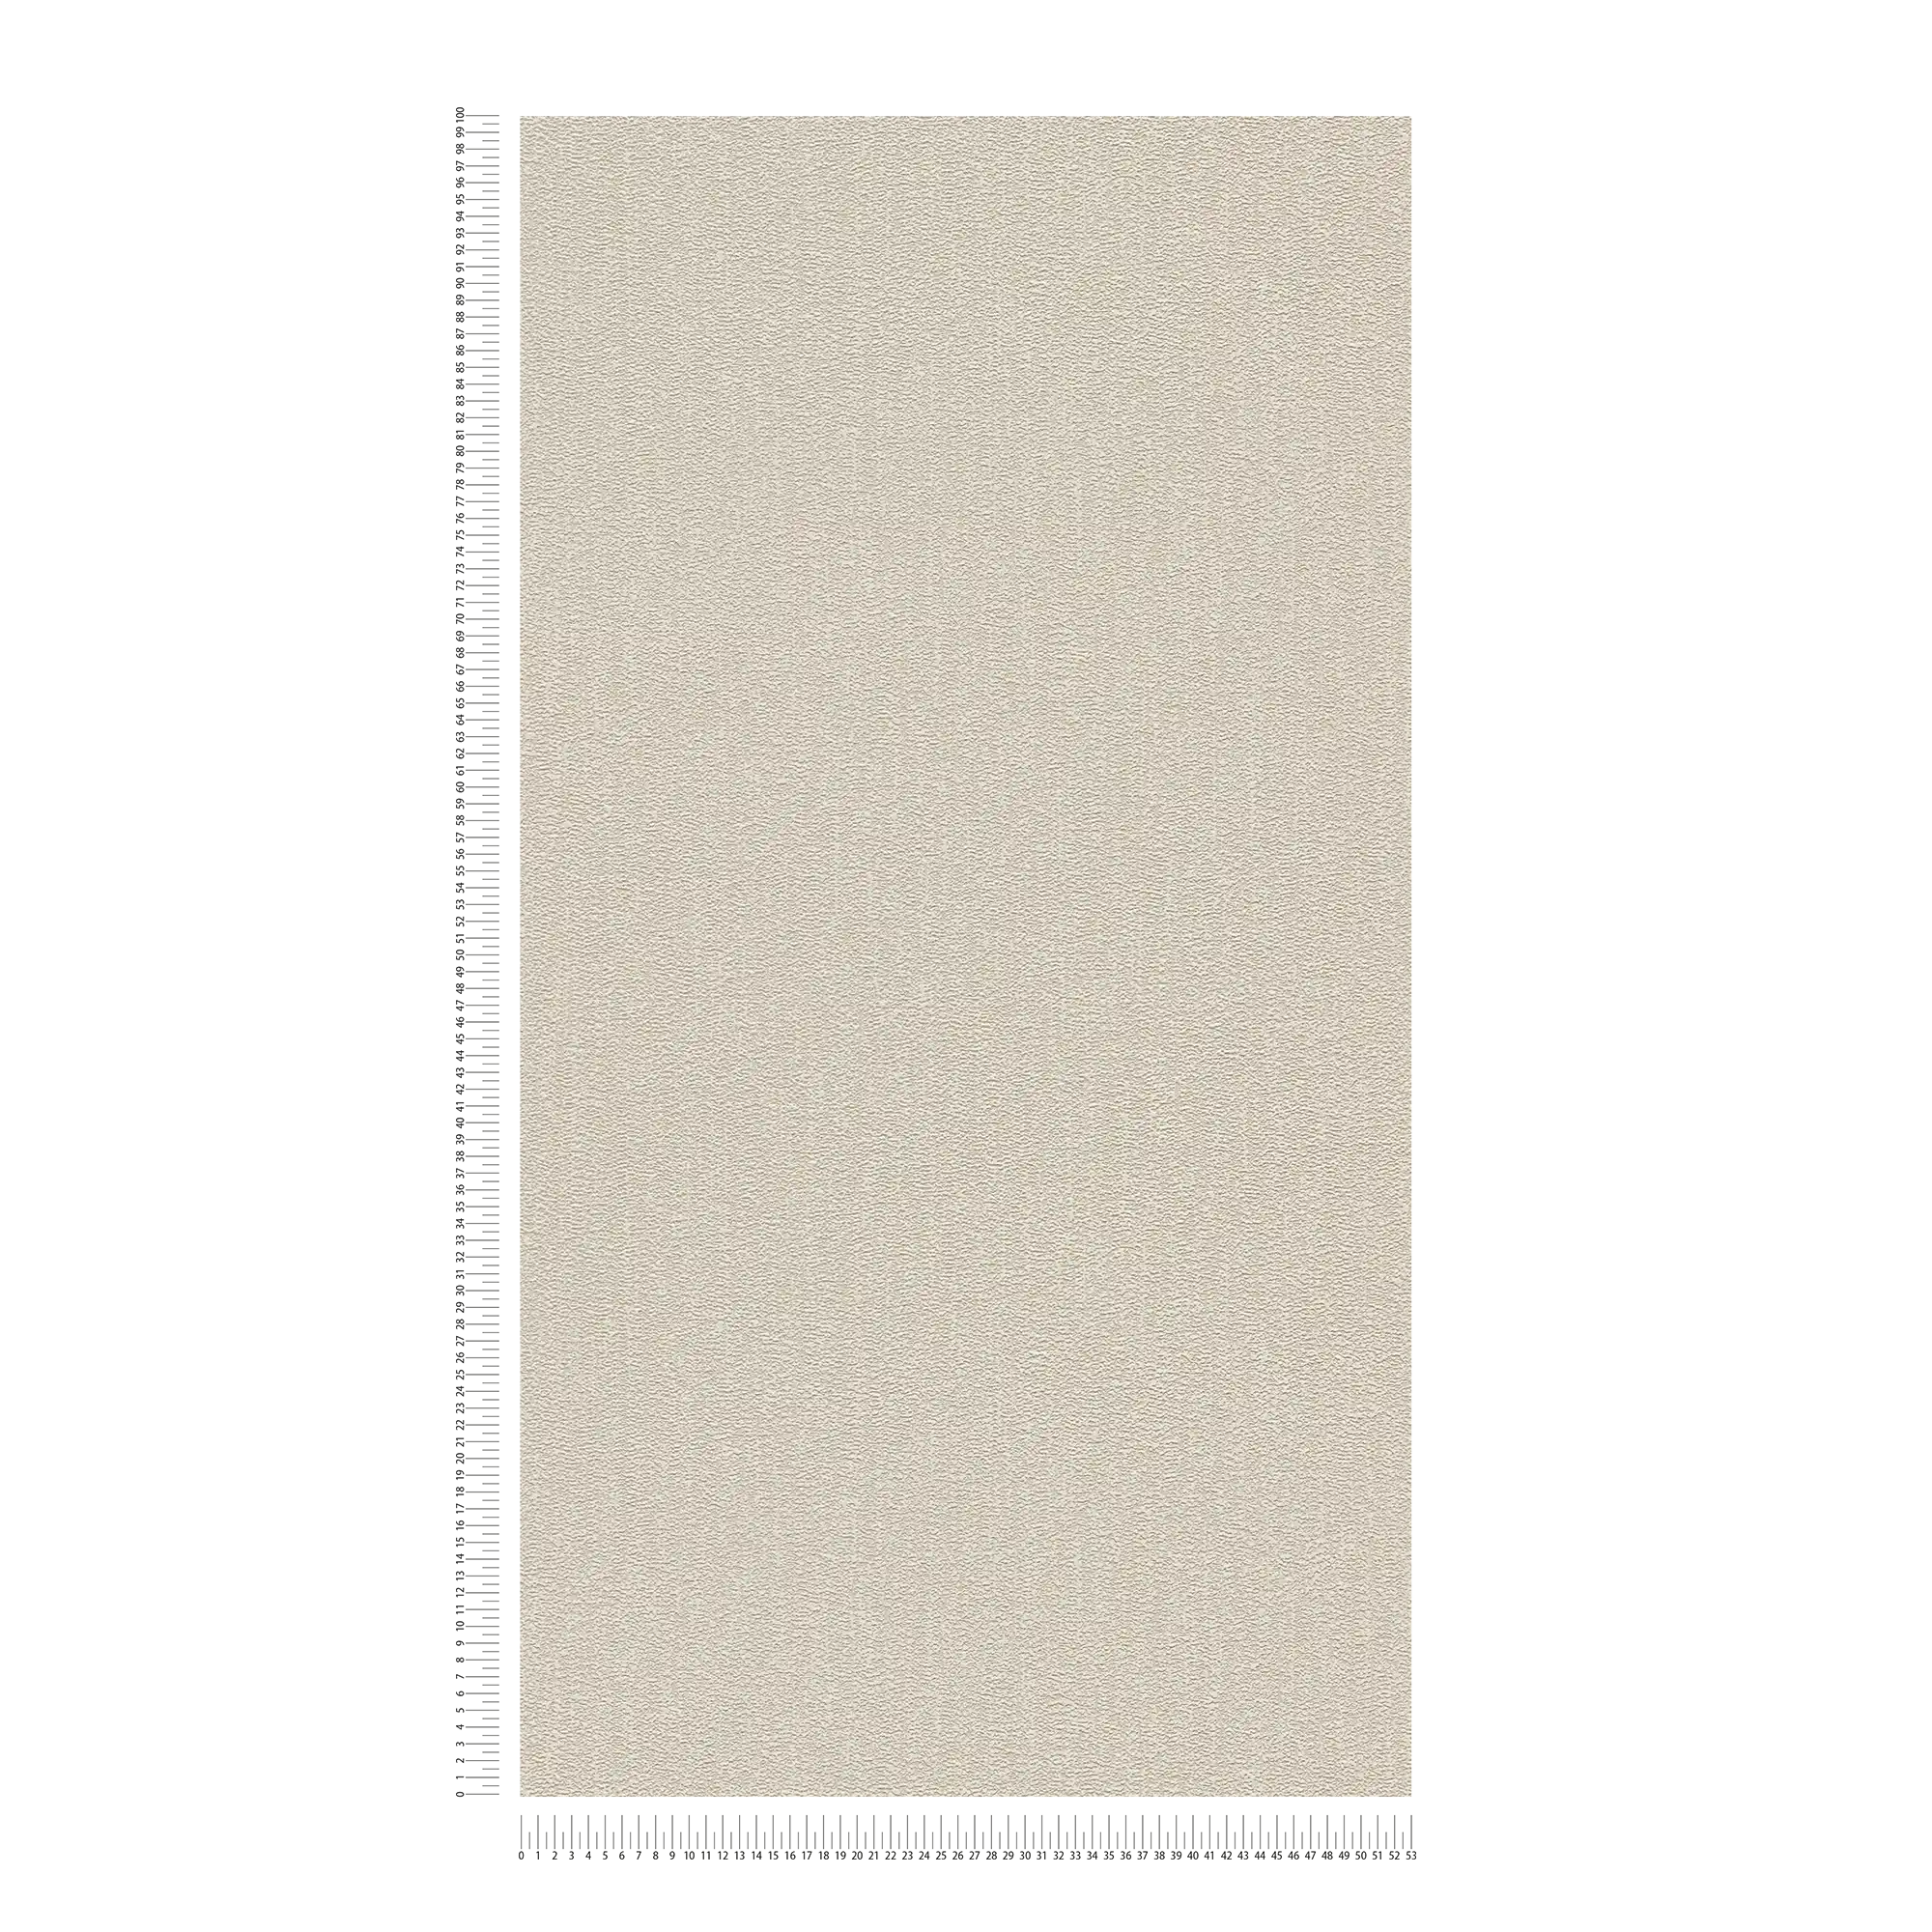             Uni Tapete mit Struktur mit leichtem Glanz – Beige, Grau, Silber
        